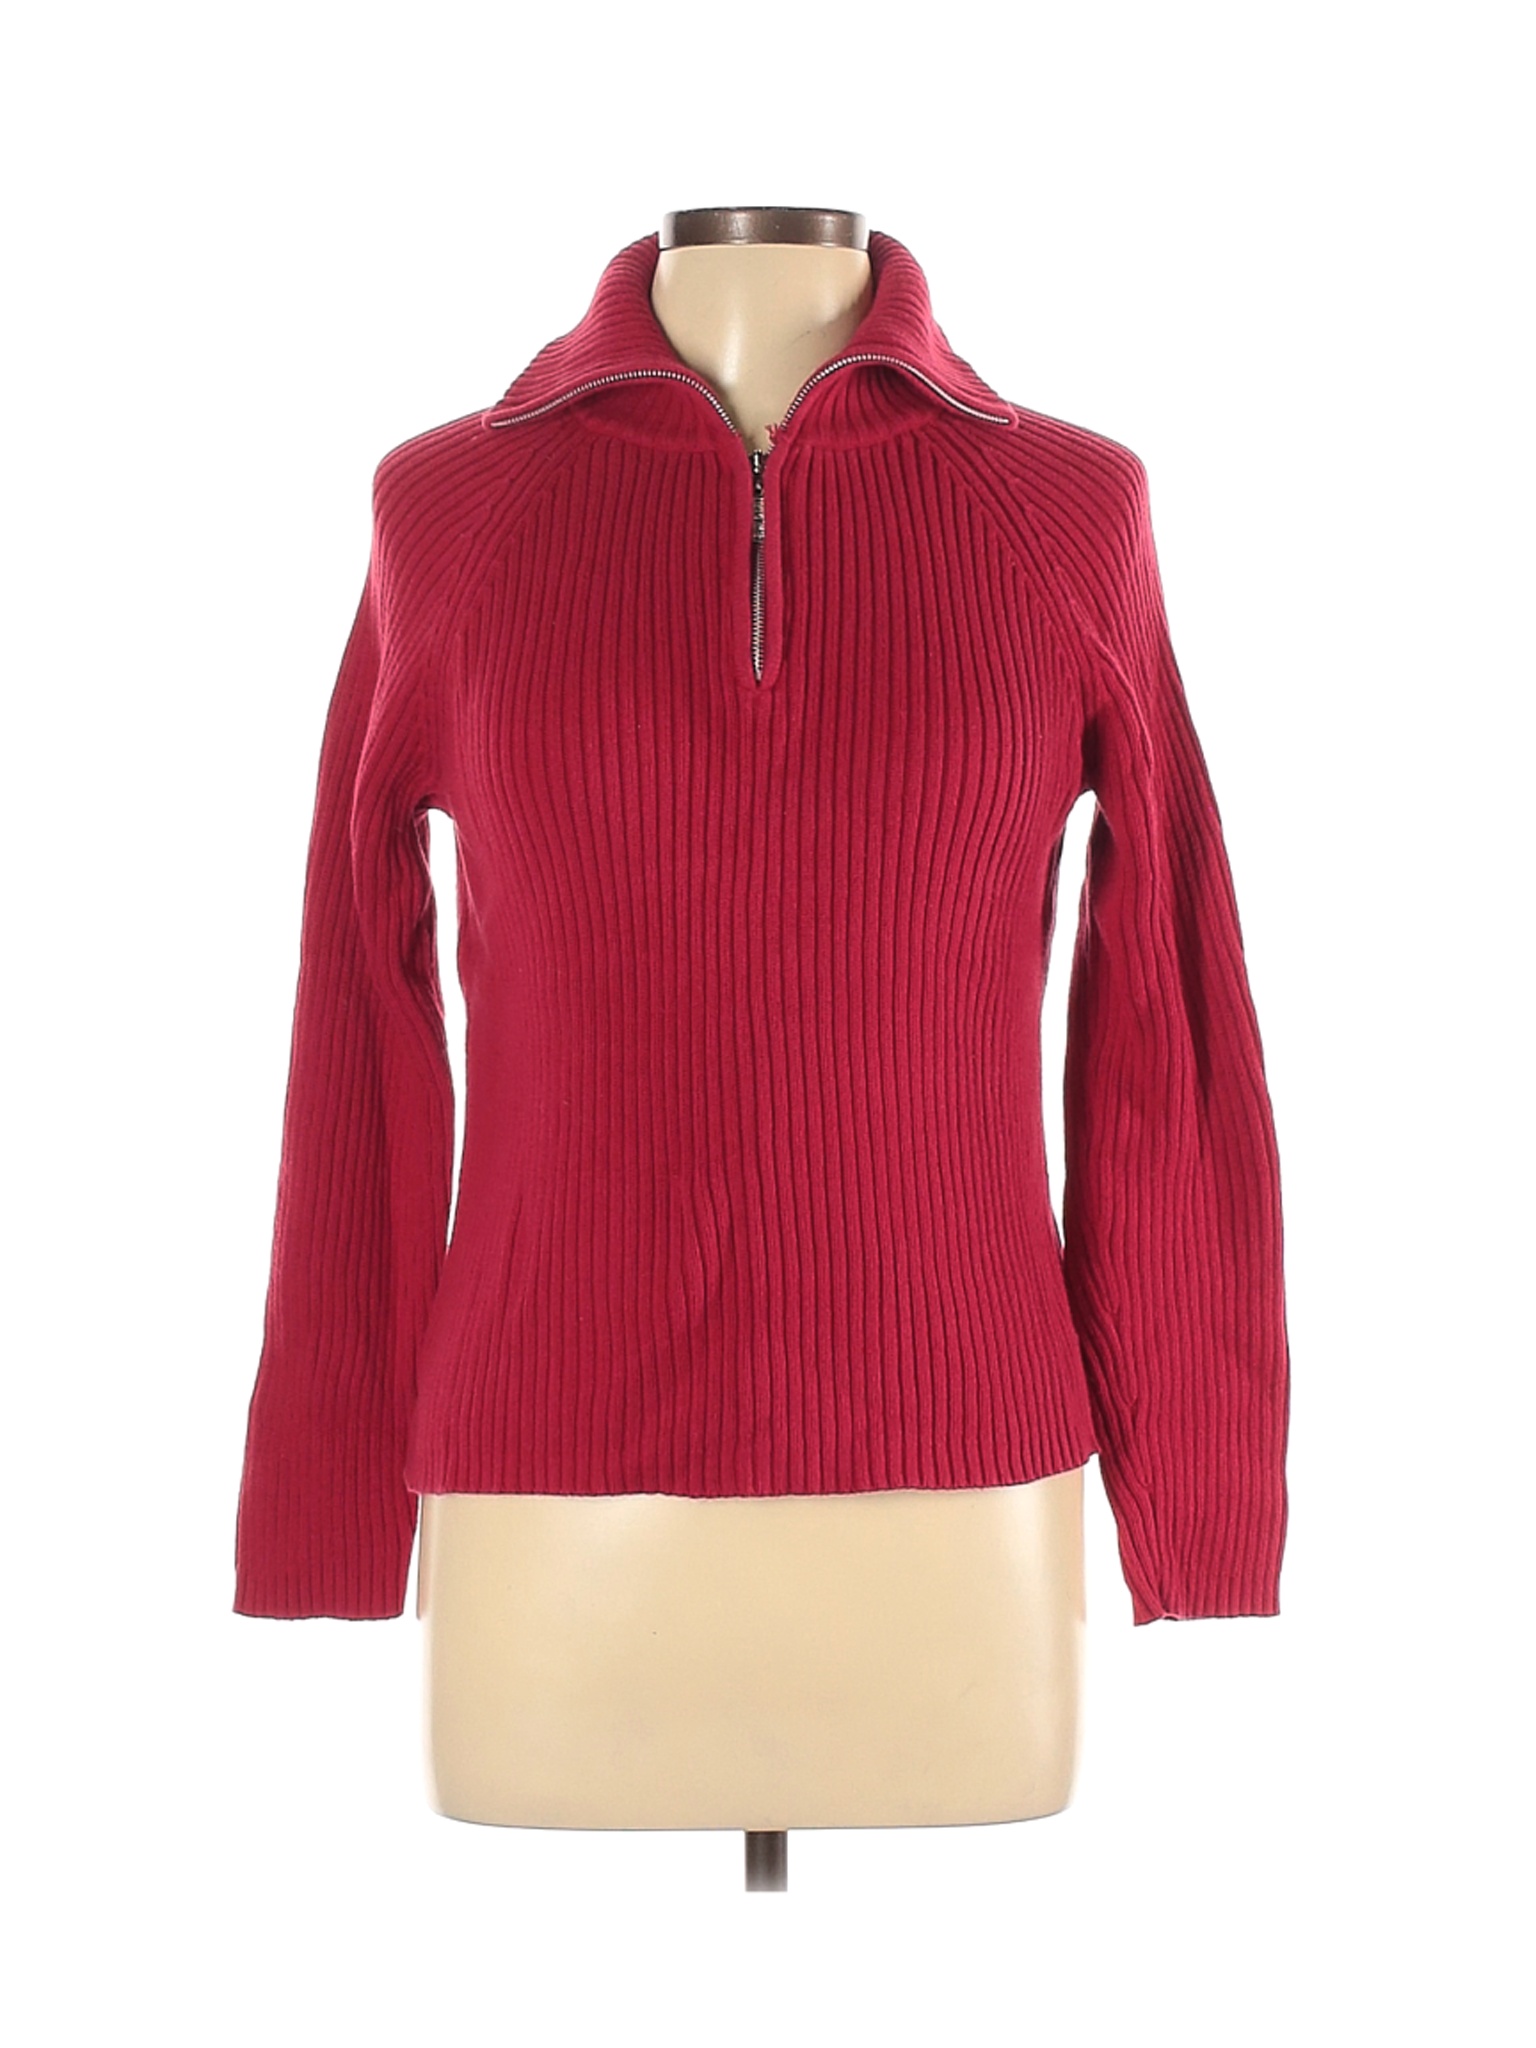 Carolyn Taylor Women Red Turtleneck Sweater L | eBay